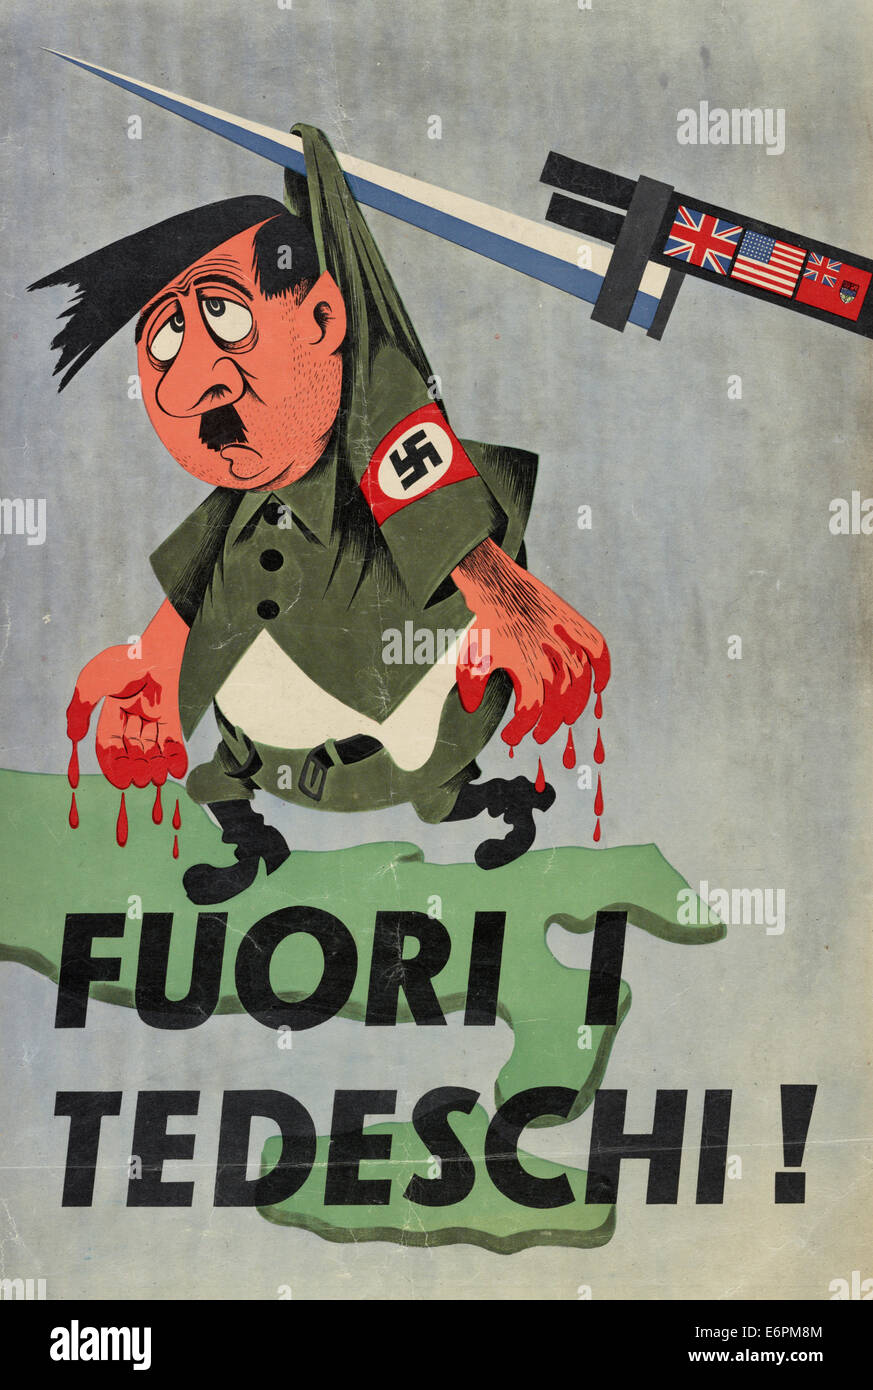 Fuori i tedeschi! - Poster mostra una caricatured Adolf Hitler con il sangue sulle sue mani pende da una baionetta, circa 1943 Foto Stock